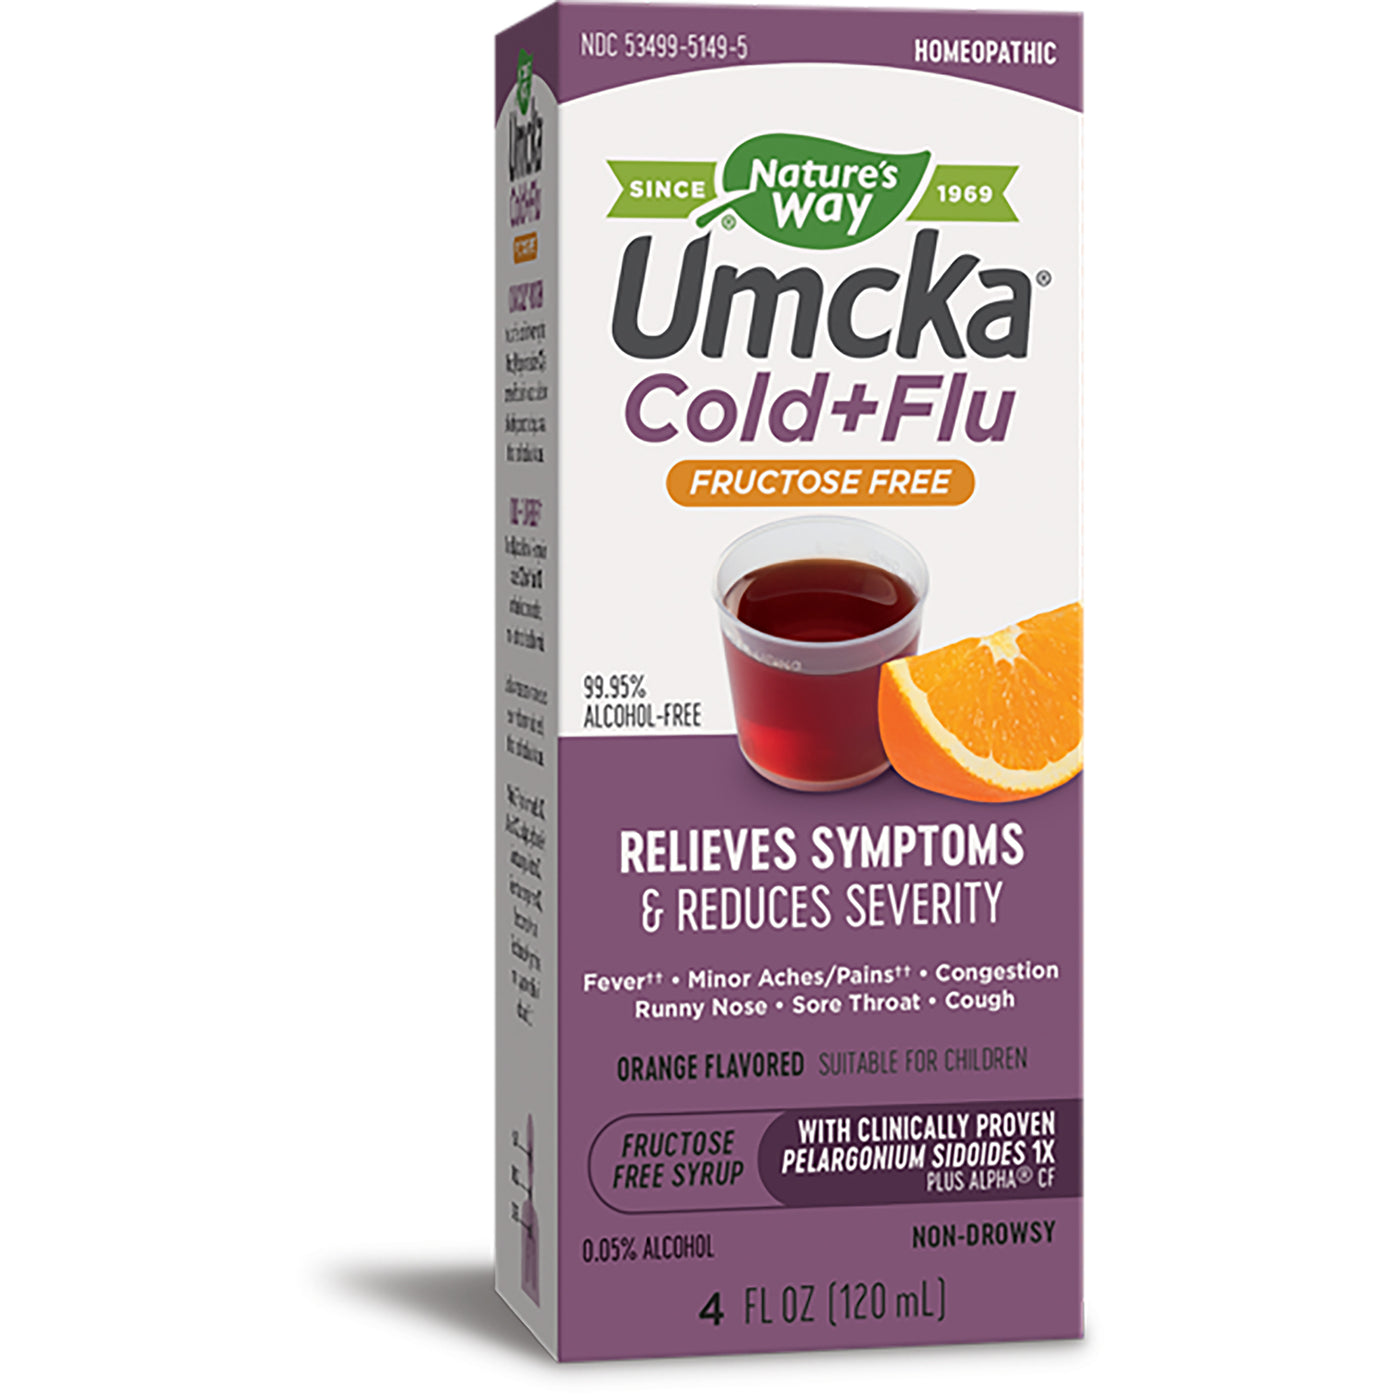 Umcka cold+flu - Euphoric Herbals